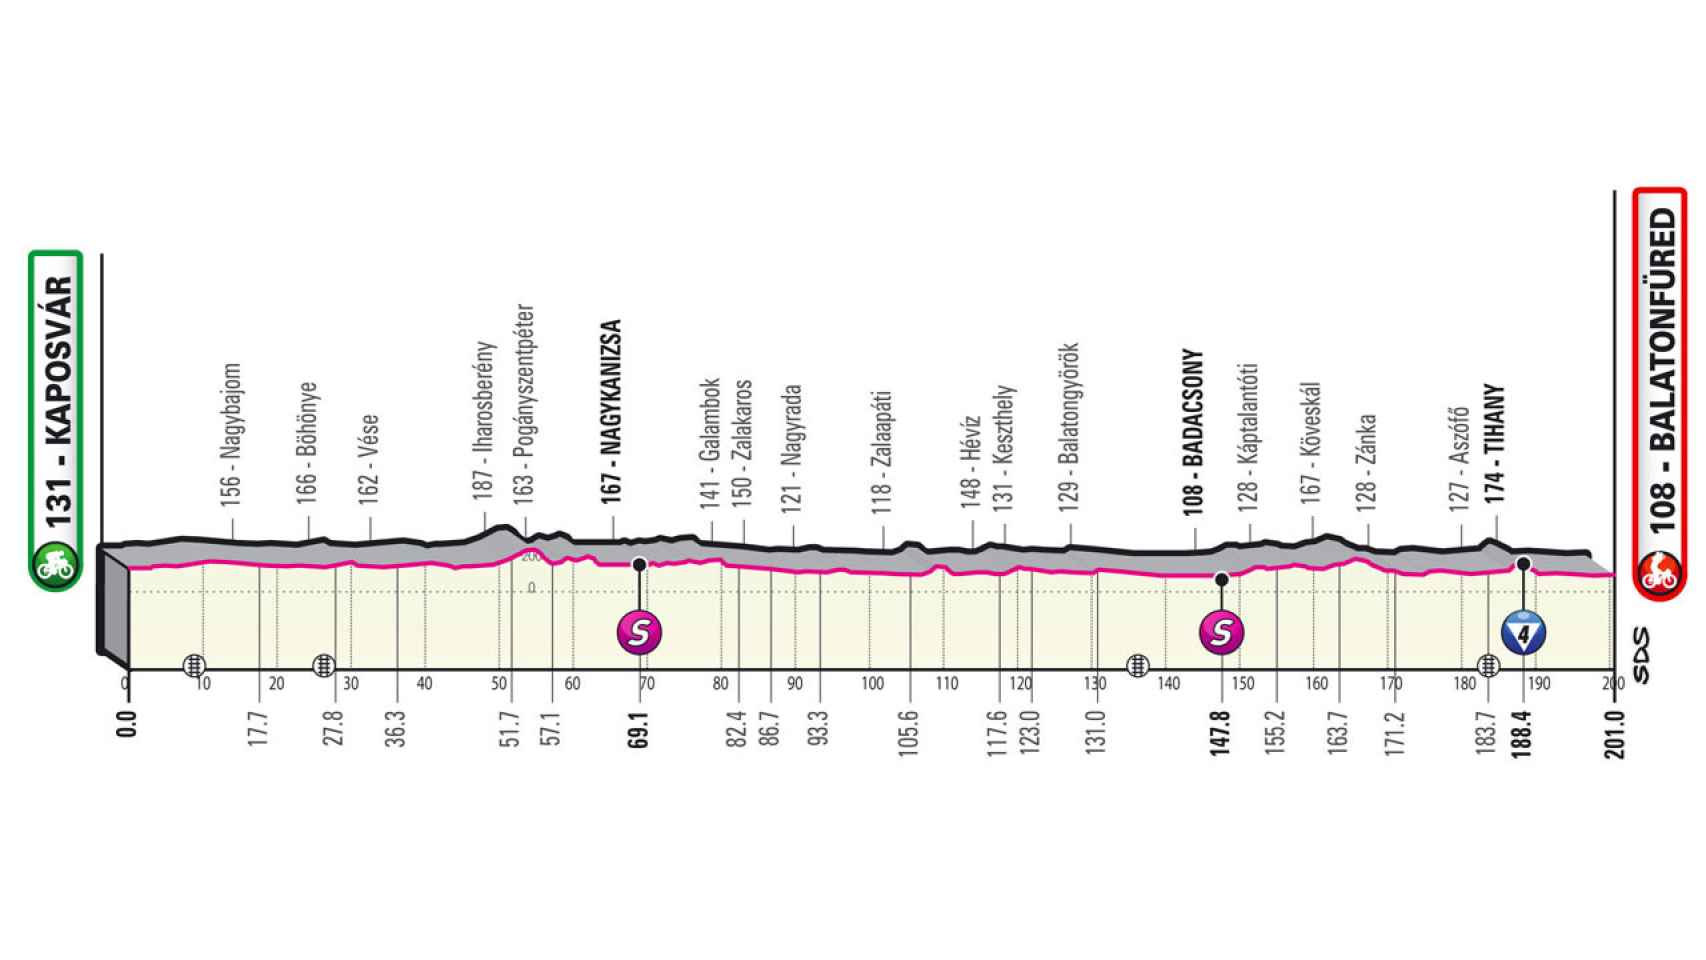 Etapa 3 del Giro de Italia 2022 (Kaposvár - Balatonfüred 201 km)